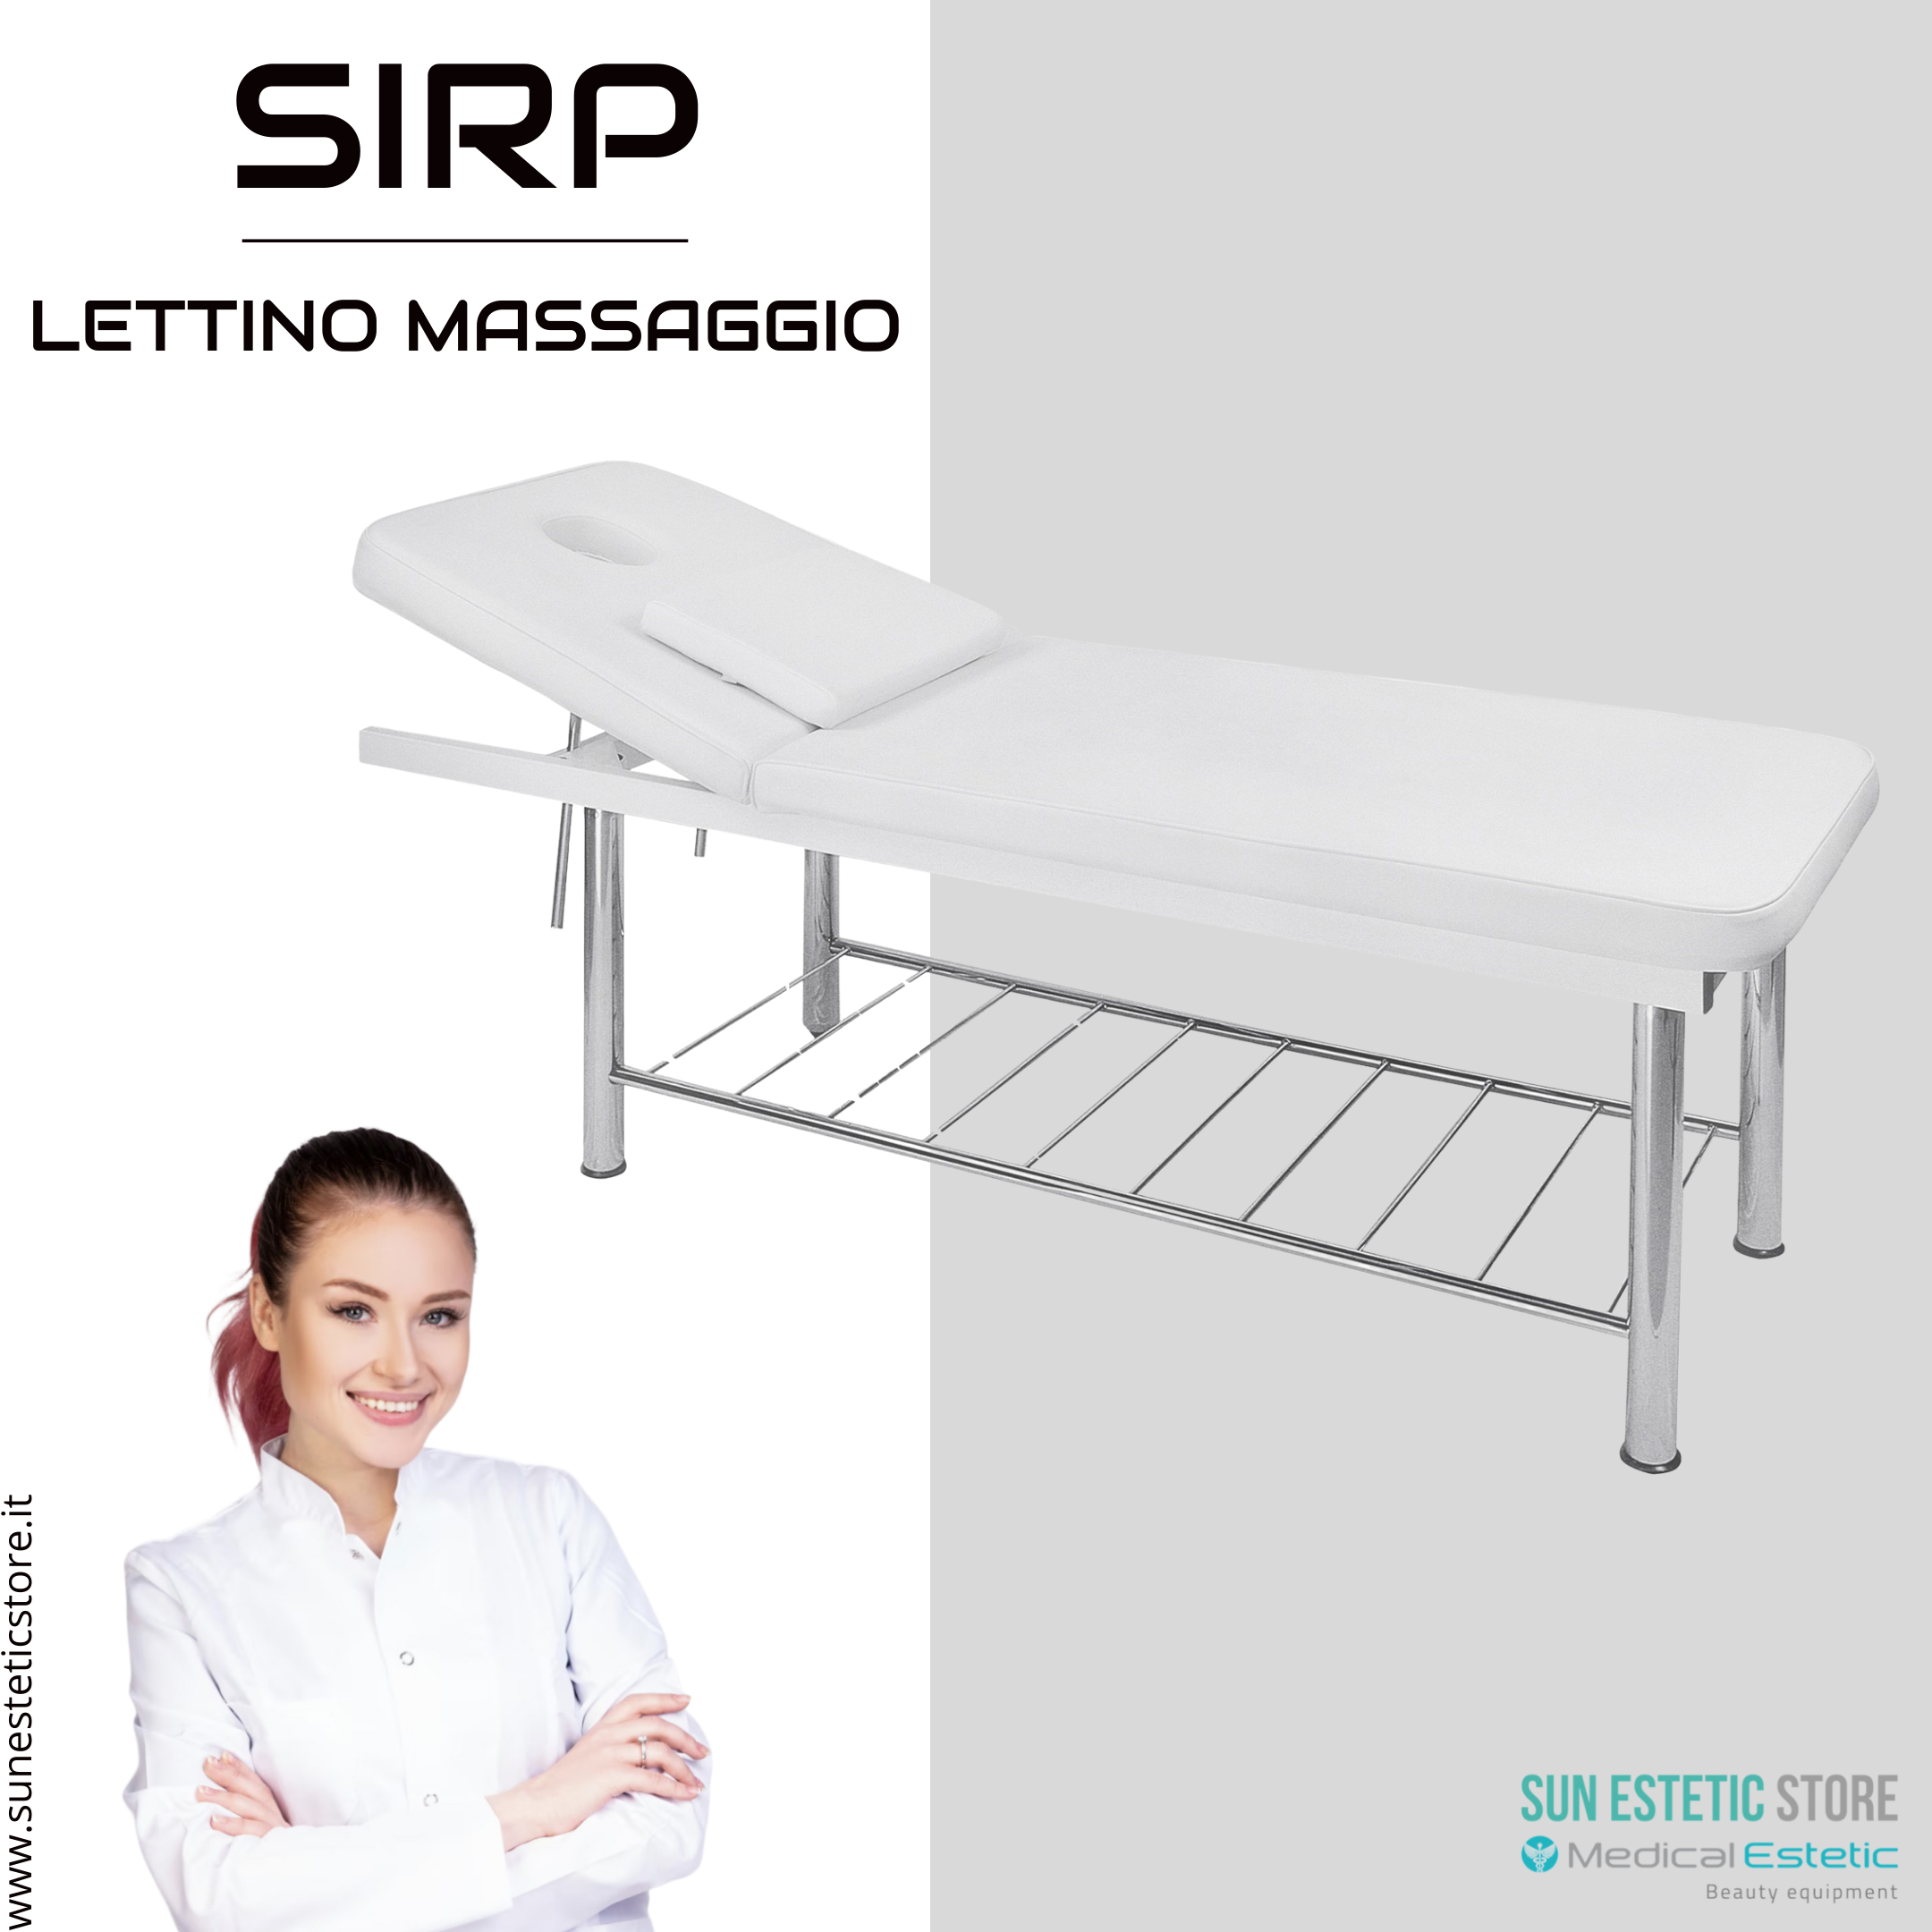 Sirp Lettino massaggio 2 sezioni 1 snodo estetista benessere